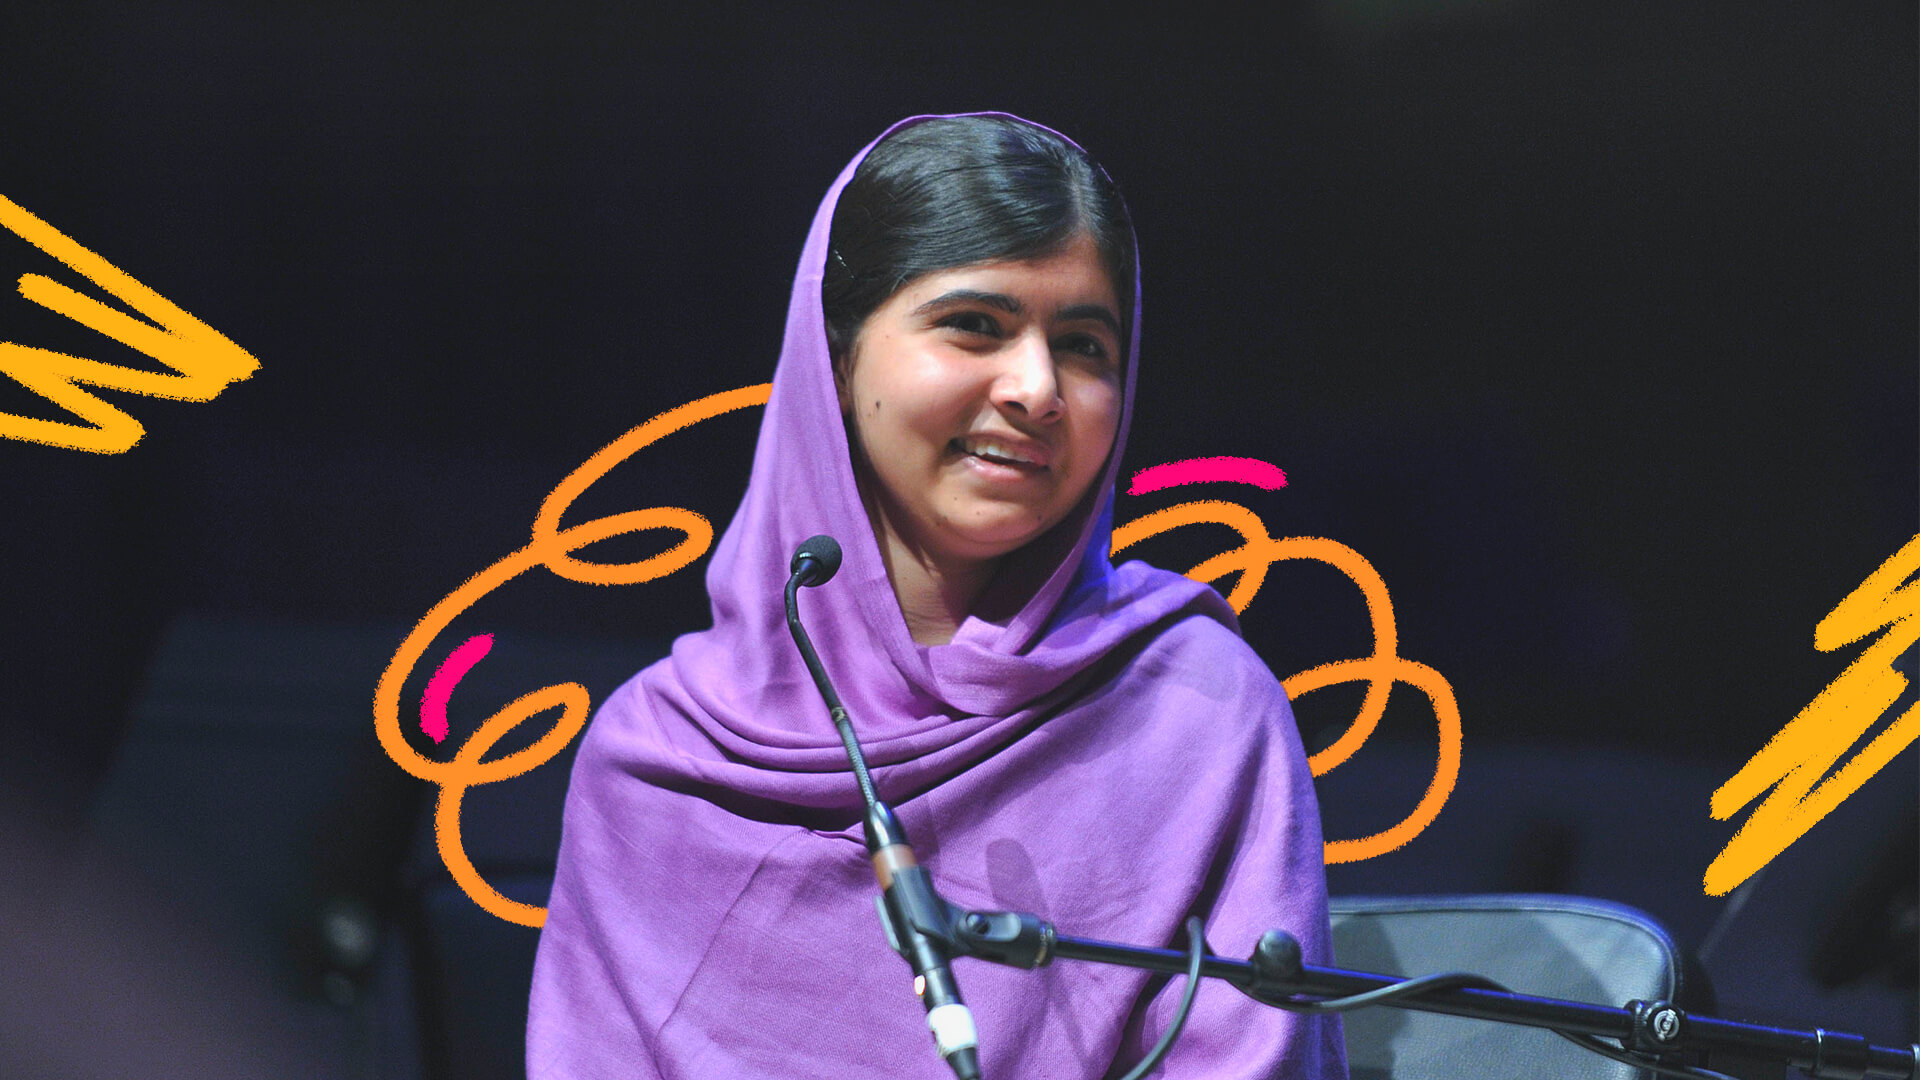 Foto da ativista paquistanesa Malala Yousafzai em matéria que apresenta 3 livros às crianças sobre sua luta para que todas as meninas estudem e em comemoração ao Dia de Malala. Ela está diante de um microfone, tem cabelos pretos e veste roxo.